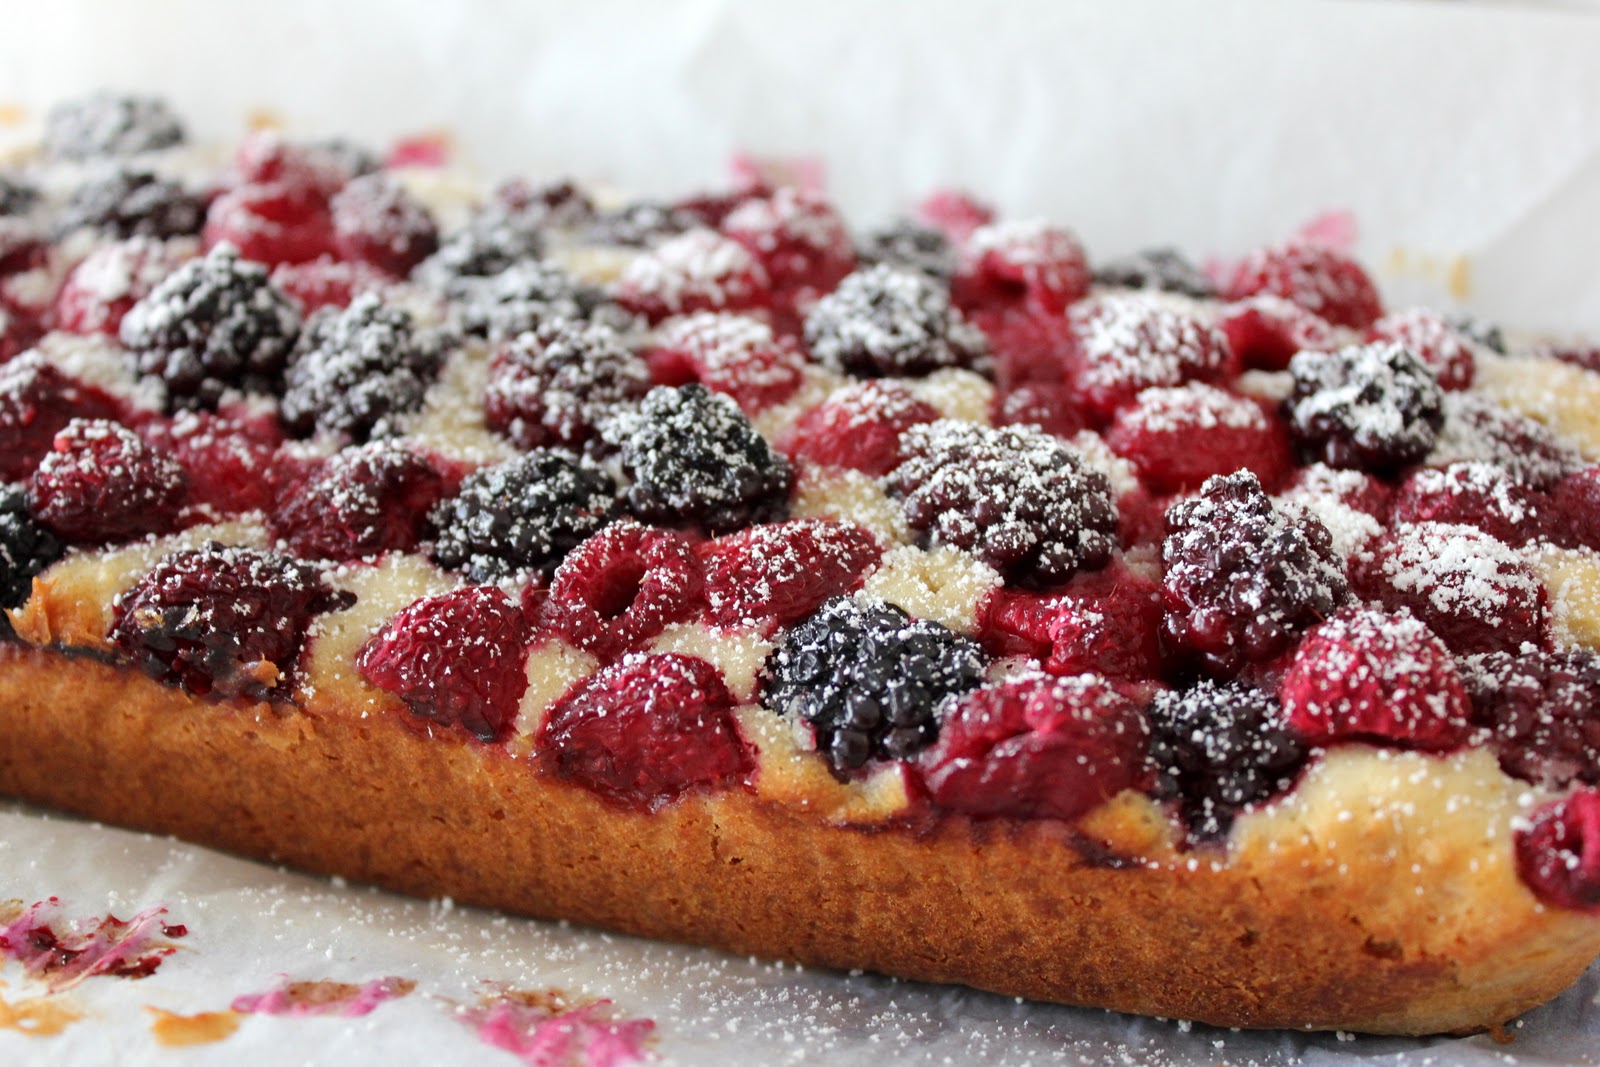 Raspberry & Blueberry Oat Bake